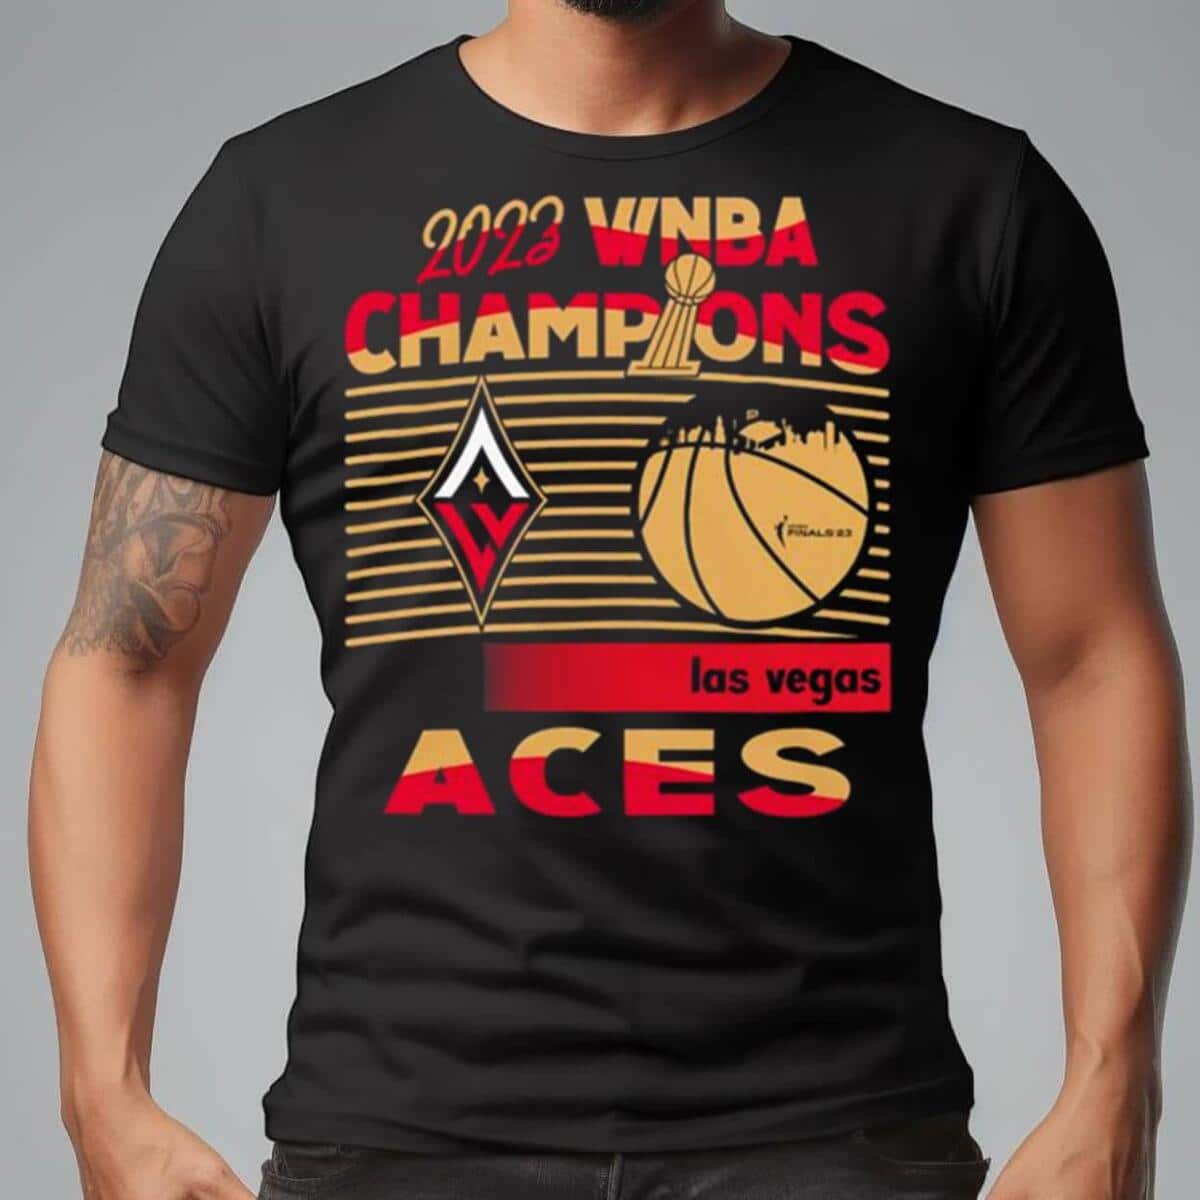 Las vegas (aces) - Las Vegas Aces - T-Shirt